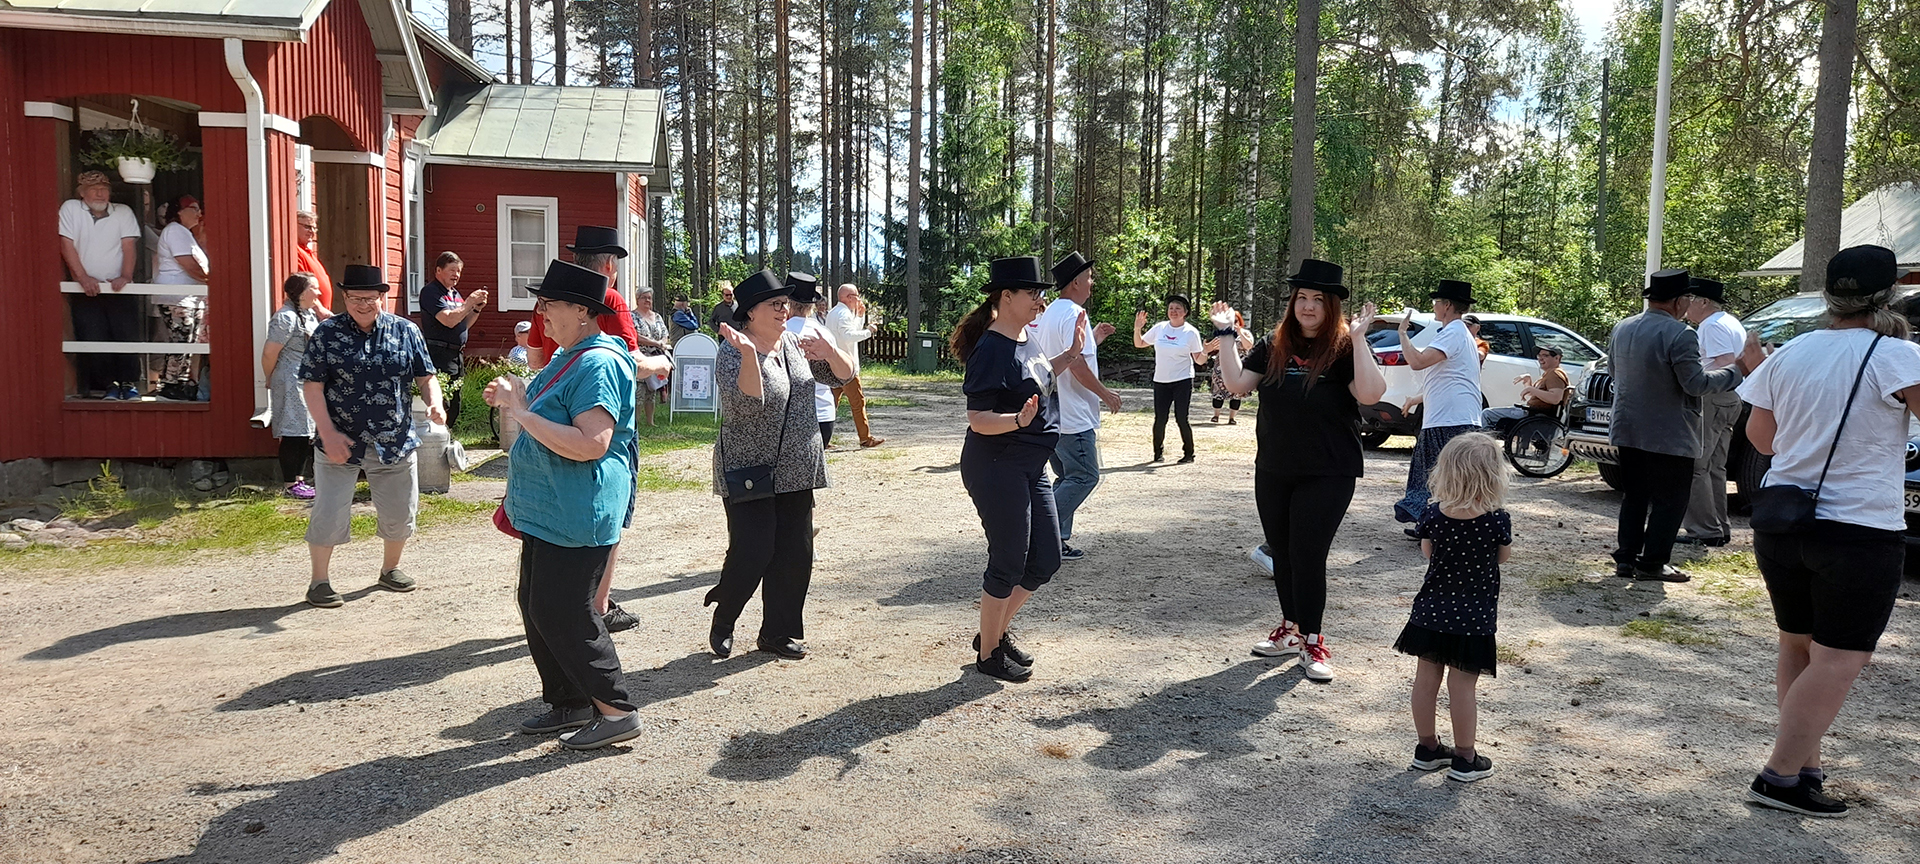 Nurmijärven kyläläiset esittävät kylätanssia kylätalon pihalla.